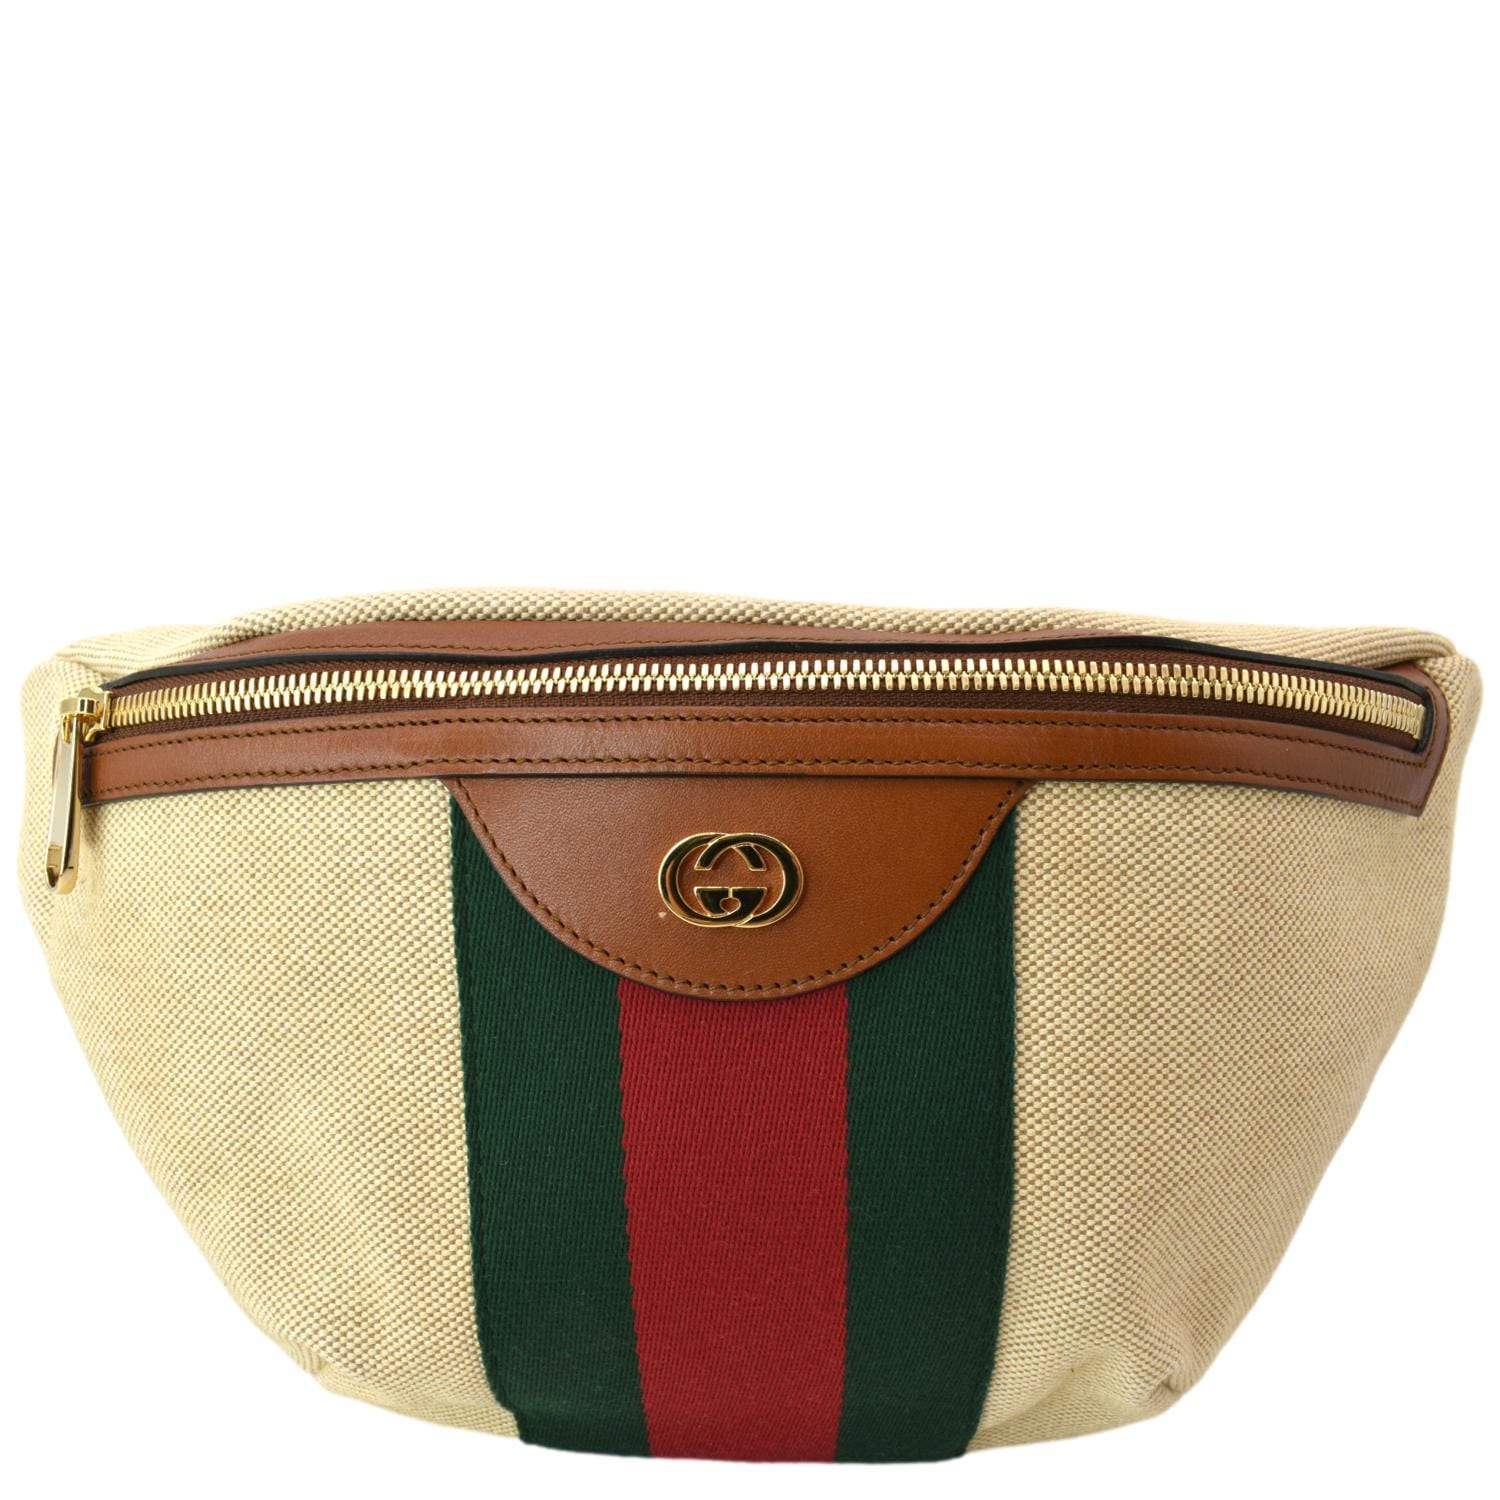 100% Authentic vintage Gucci belt bag